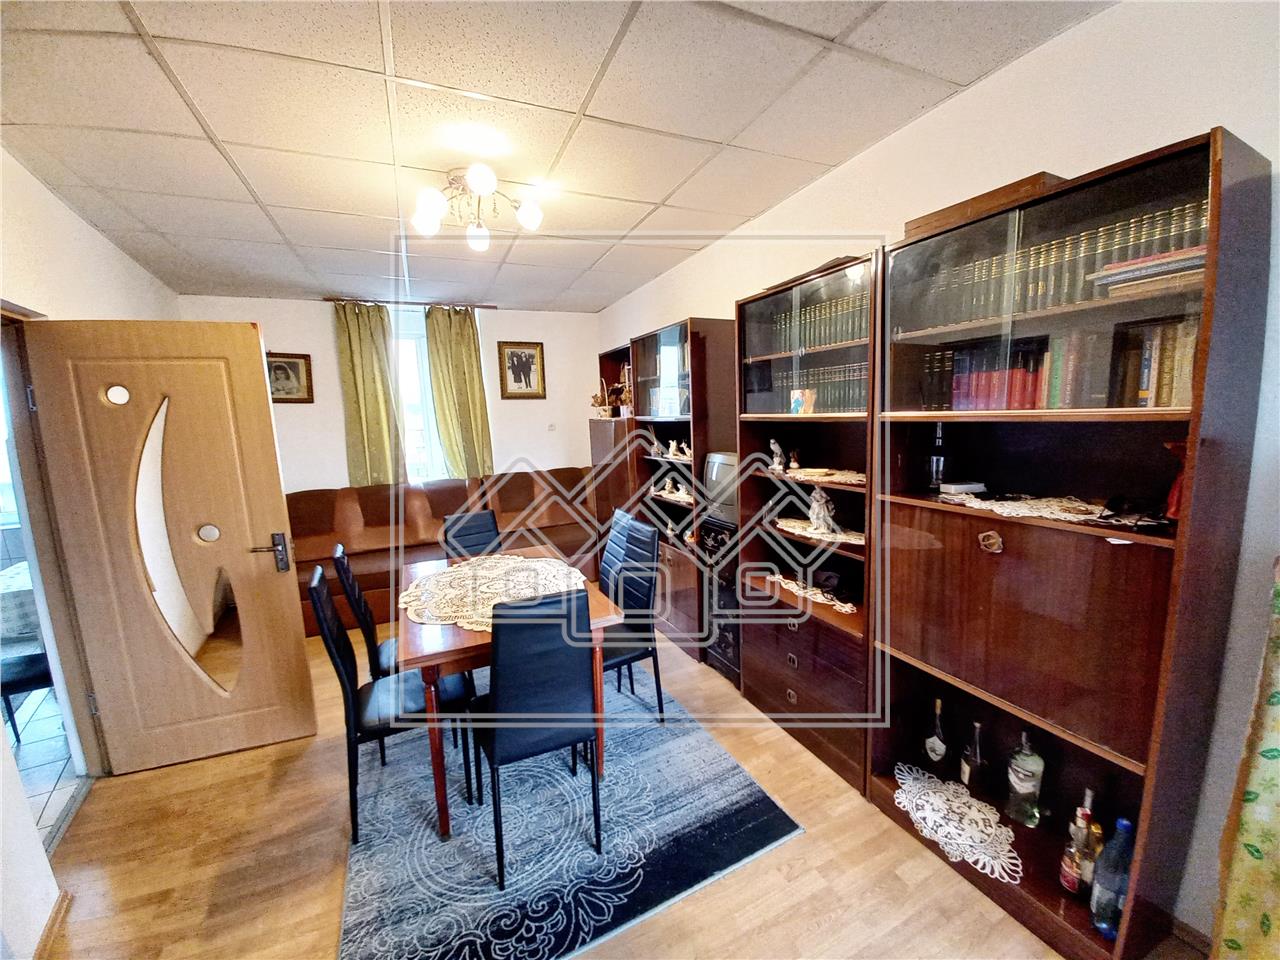 Apartment for sale in Alba Iulia - 3 rooms - detached - 105 sqm